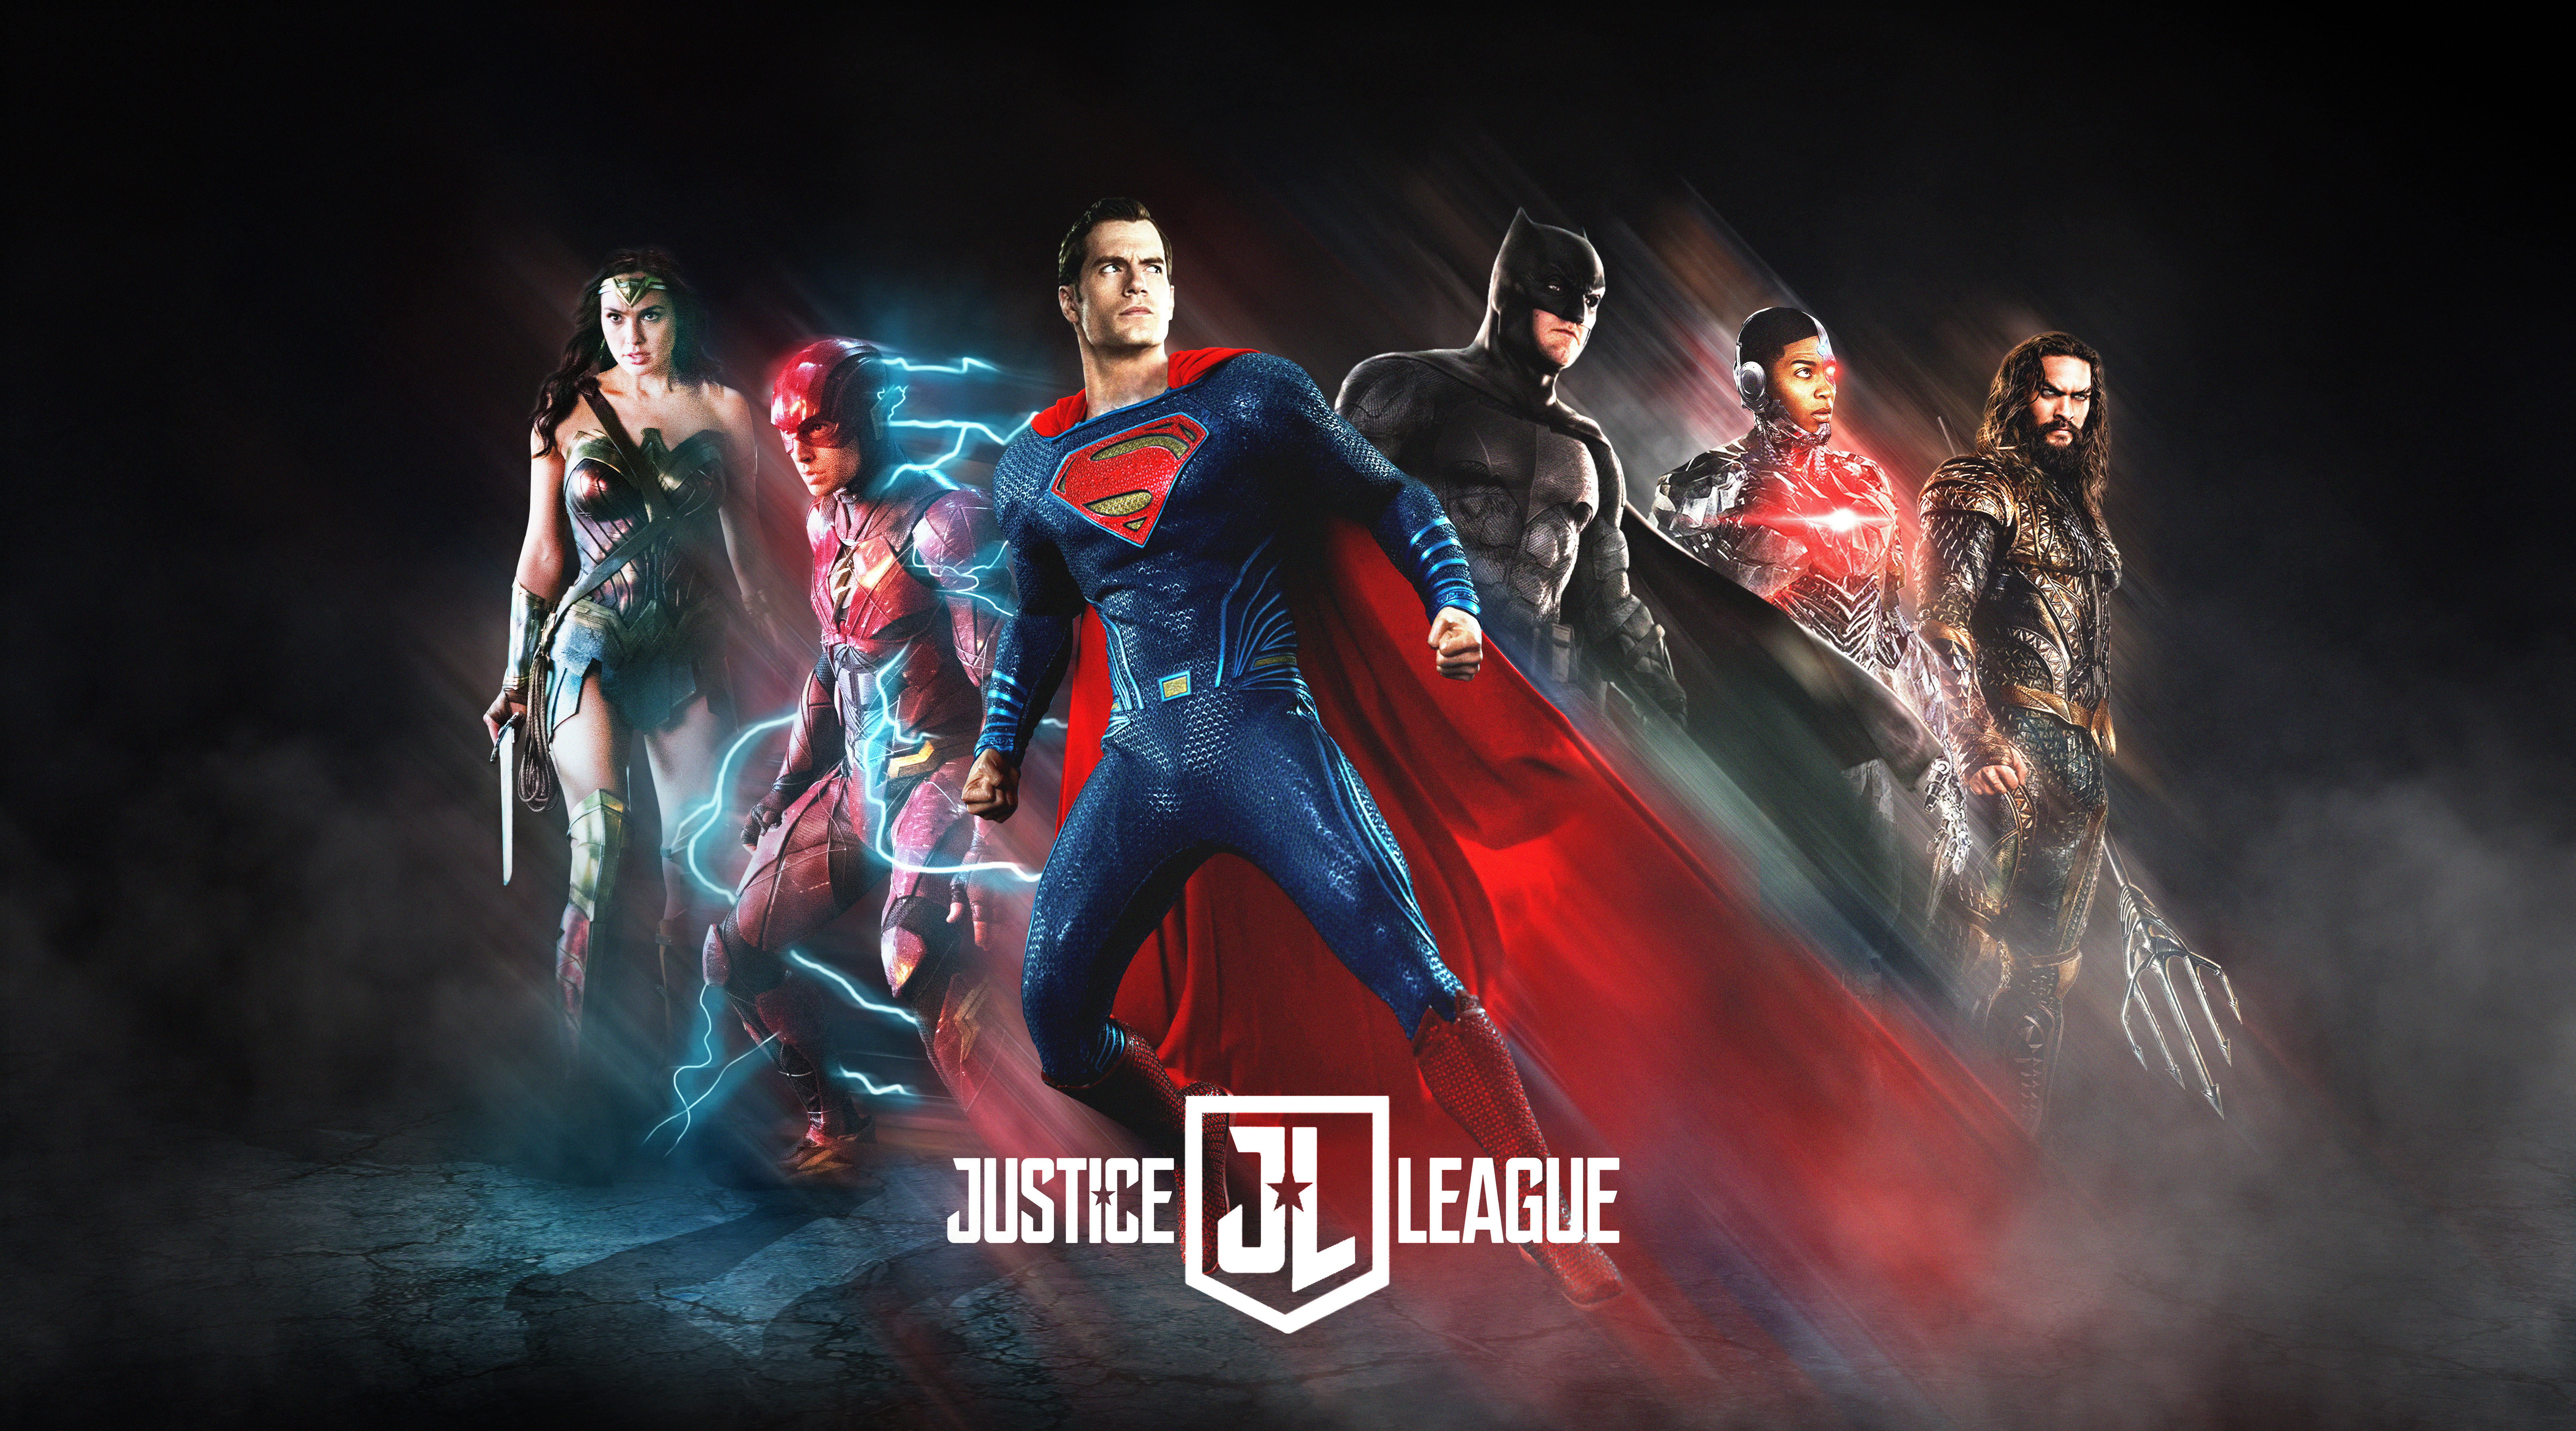 liga de la justicia fondo de pantalla hd,superhéroe,película,personaje de ficción,héroe,póster